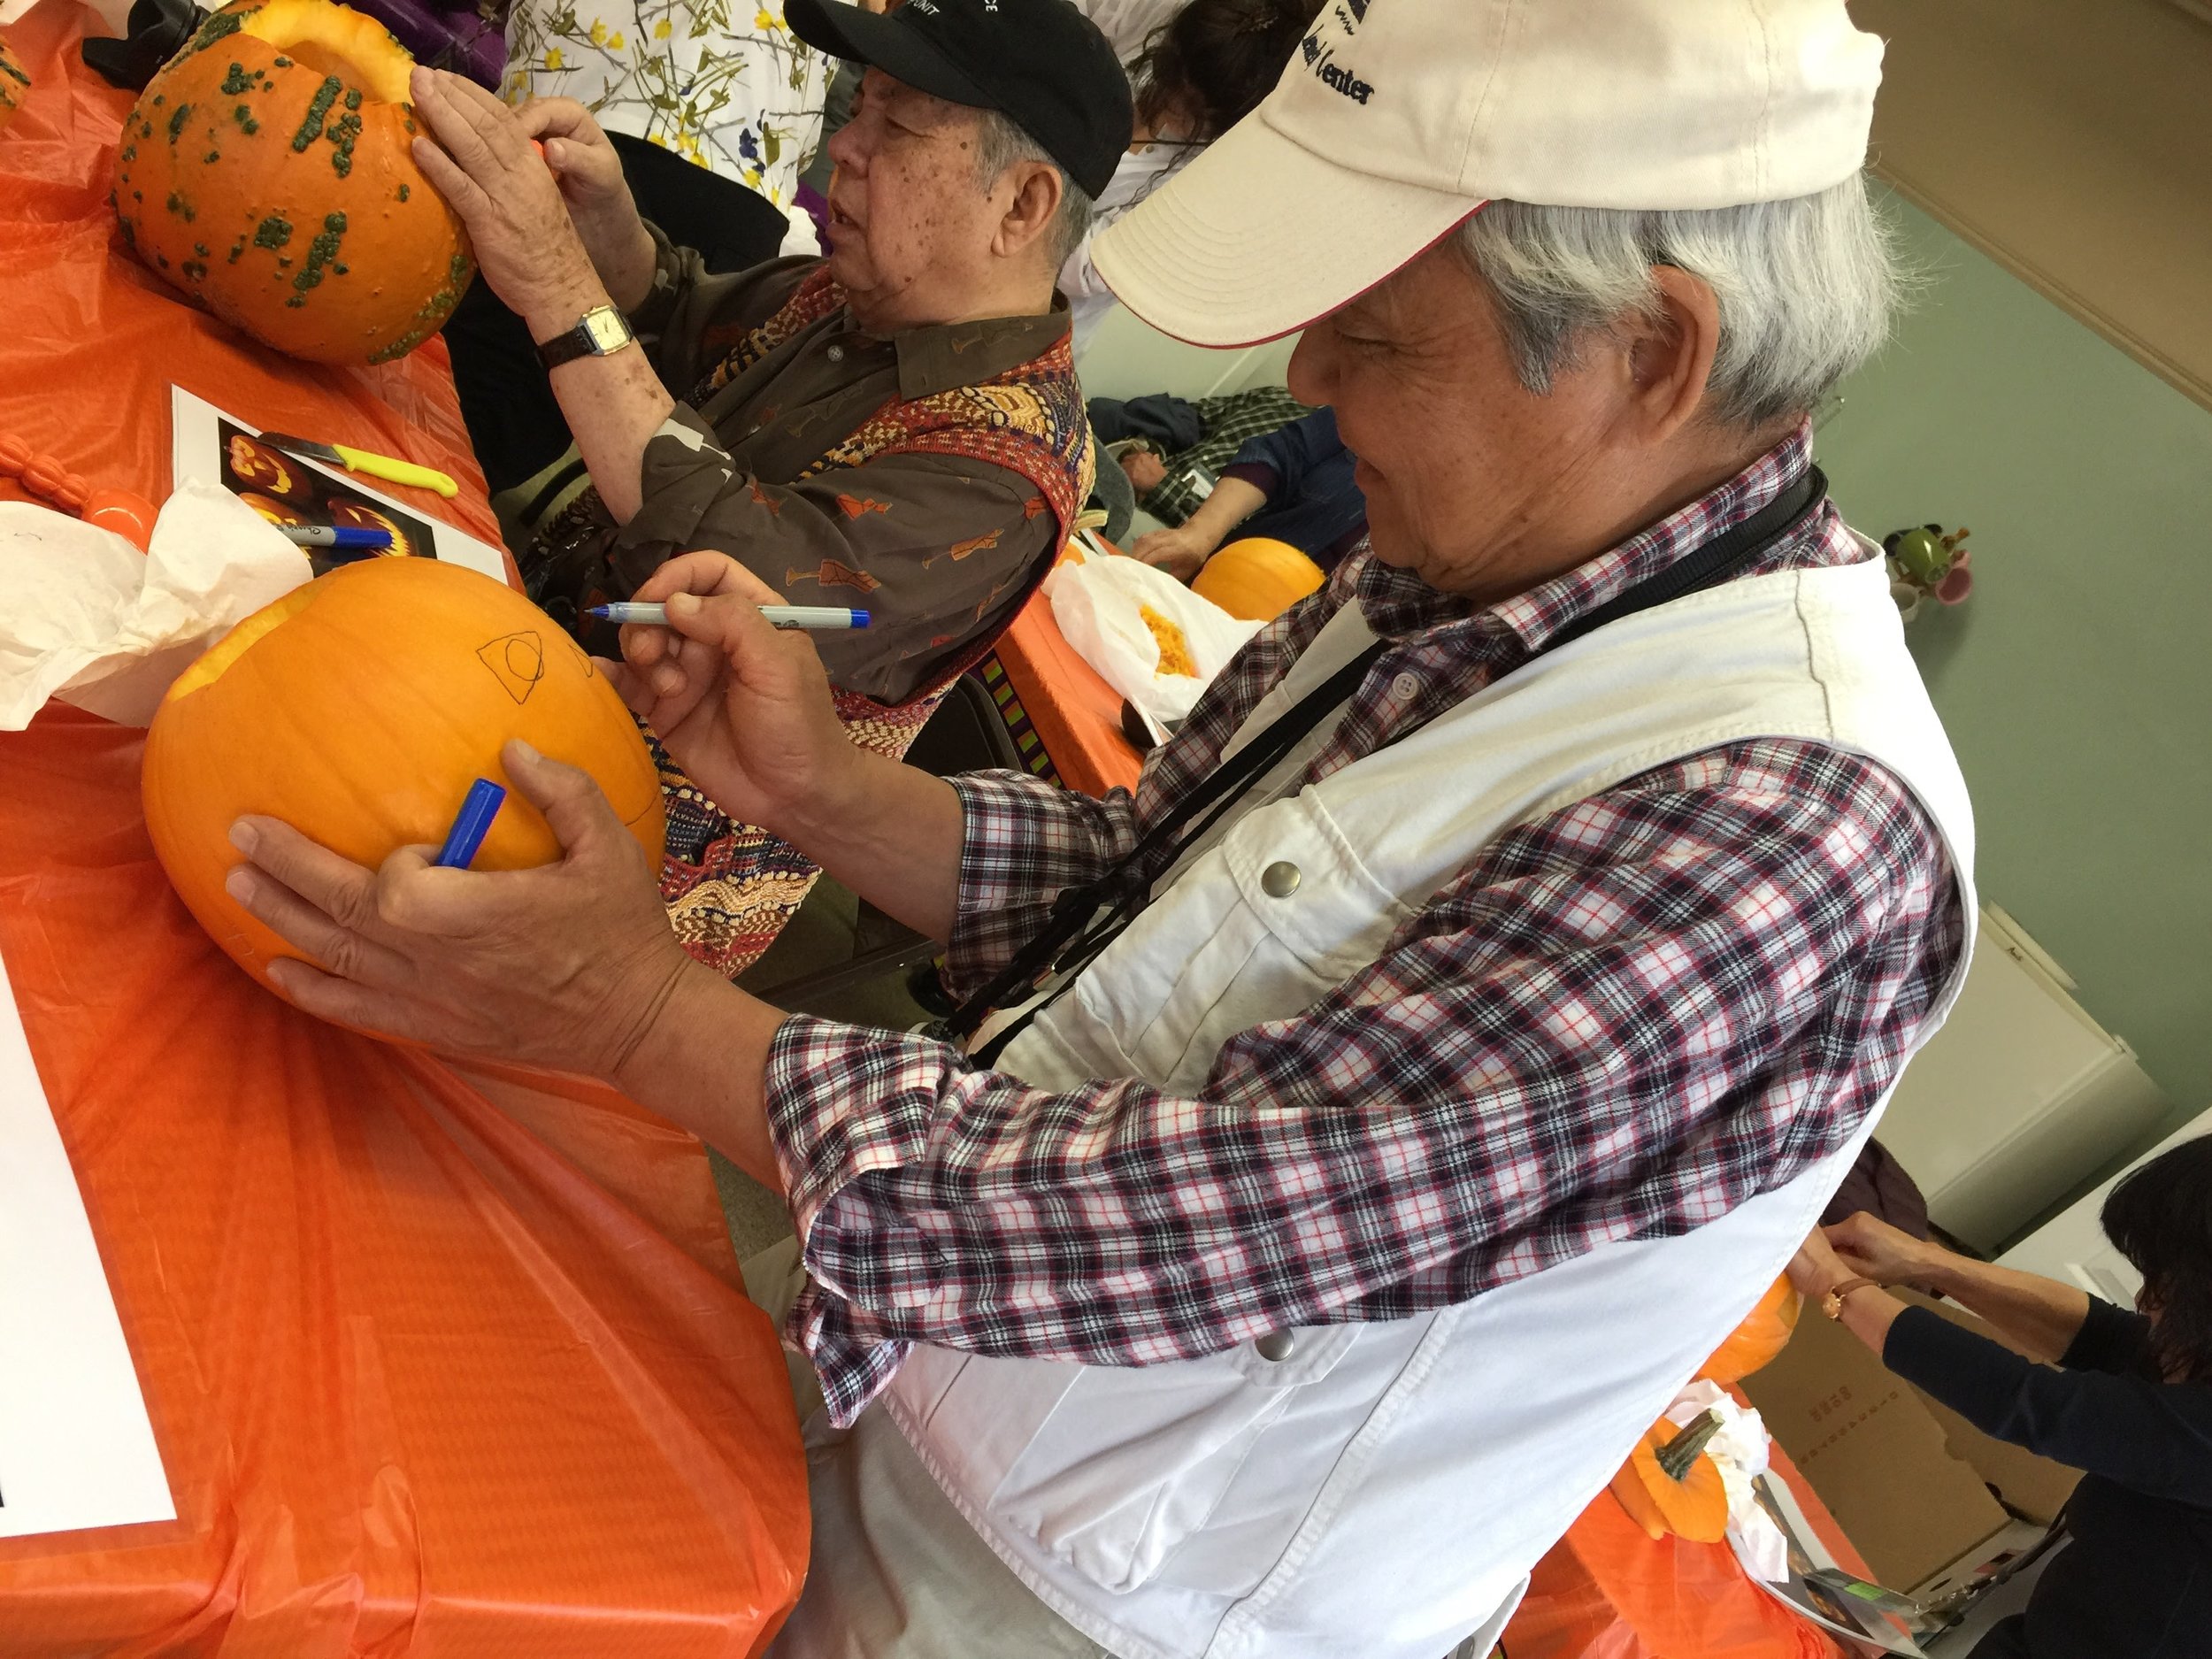 Carving Pumpkins at the Umpqua Valley Arts Center